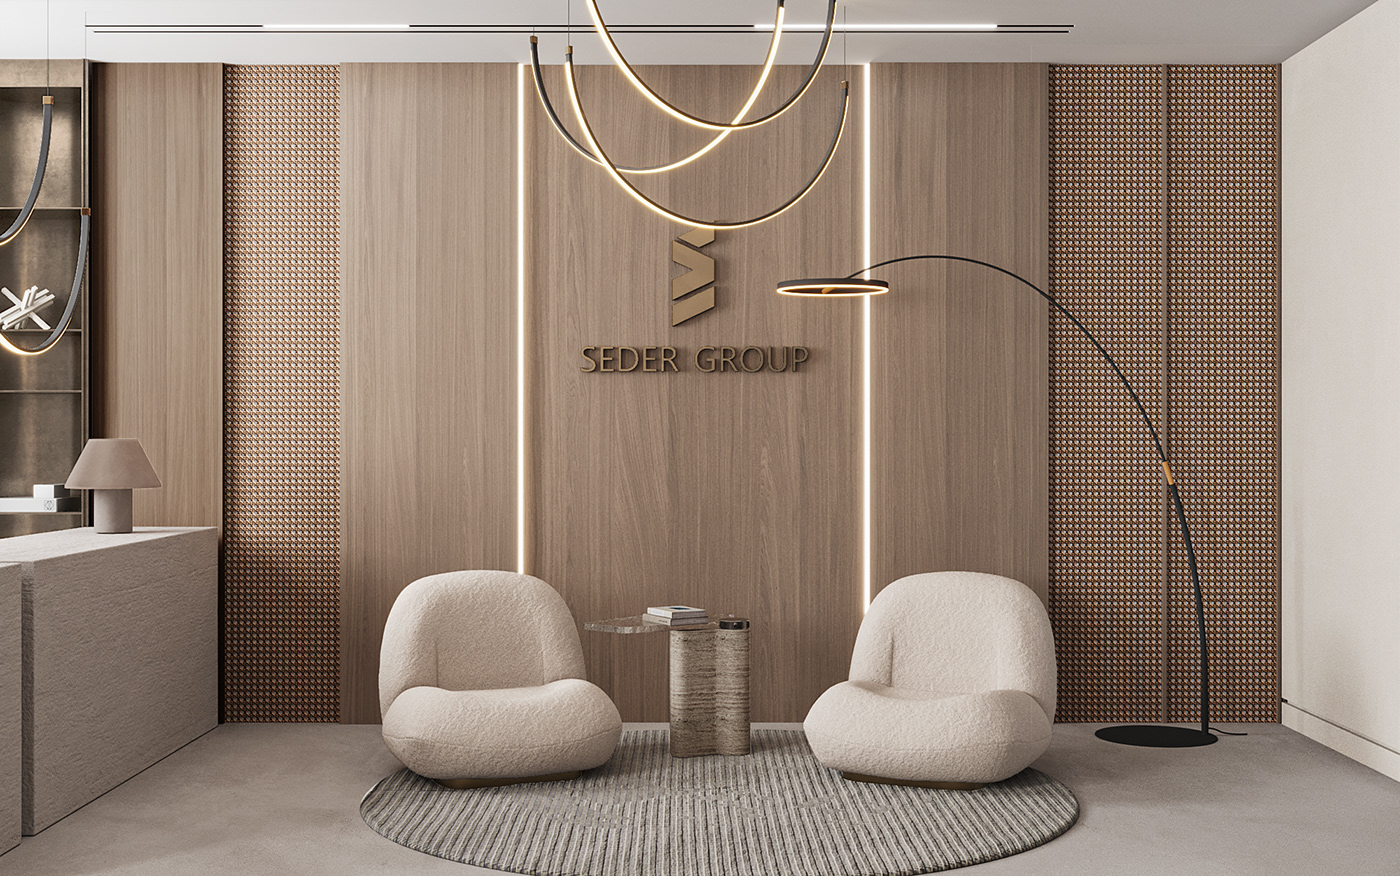 workspace Office interior design  archviz visualization modern architecture Office Design reception luxury